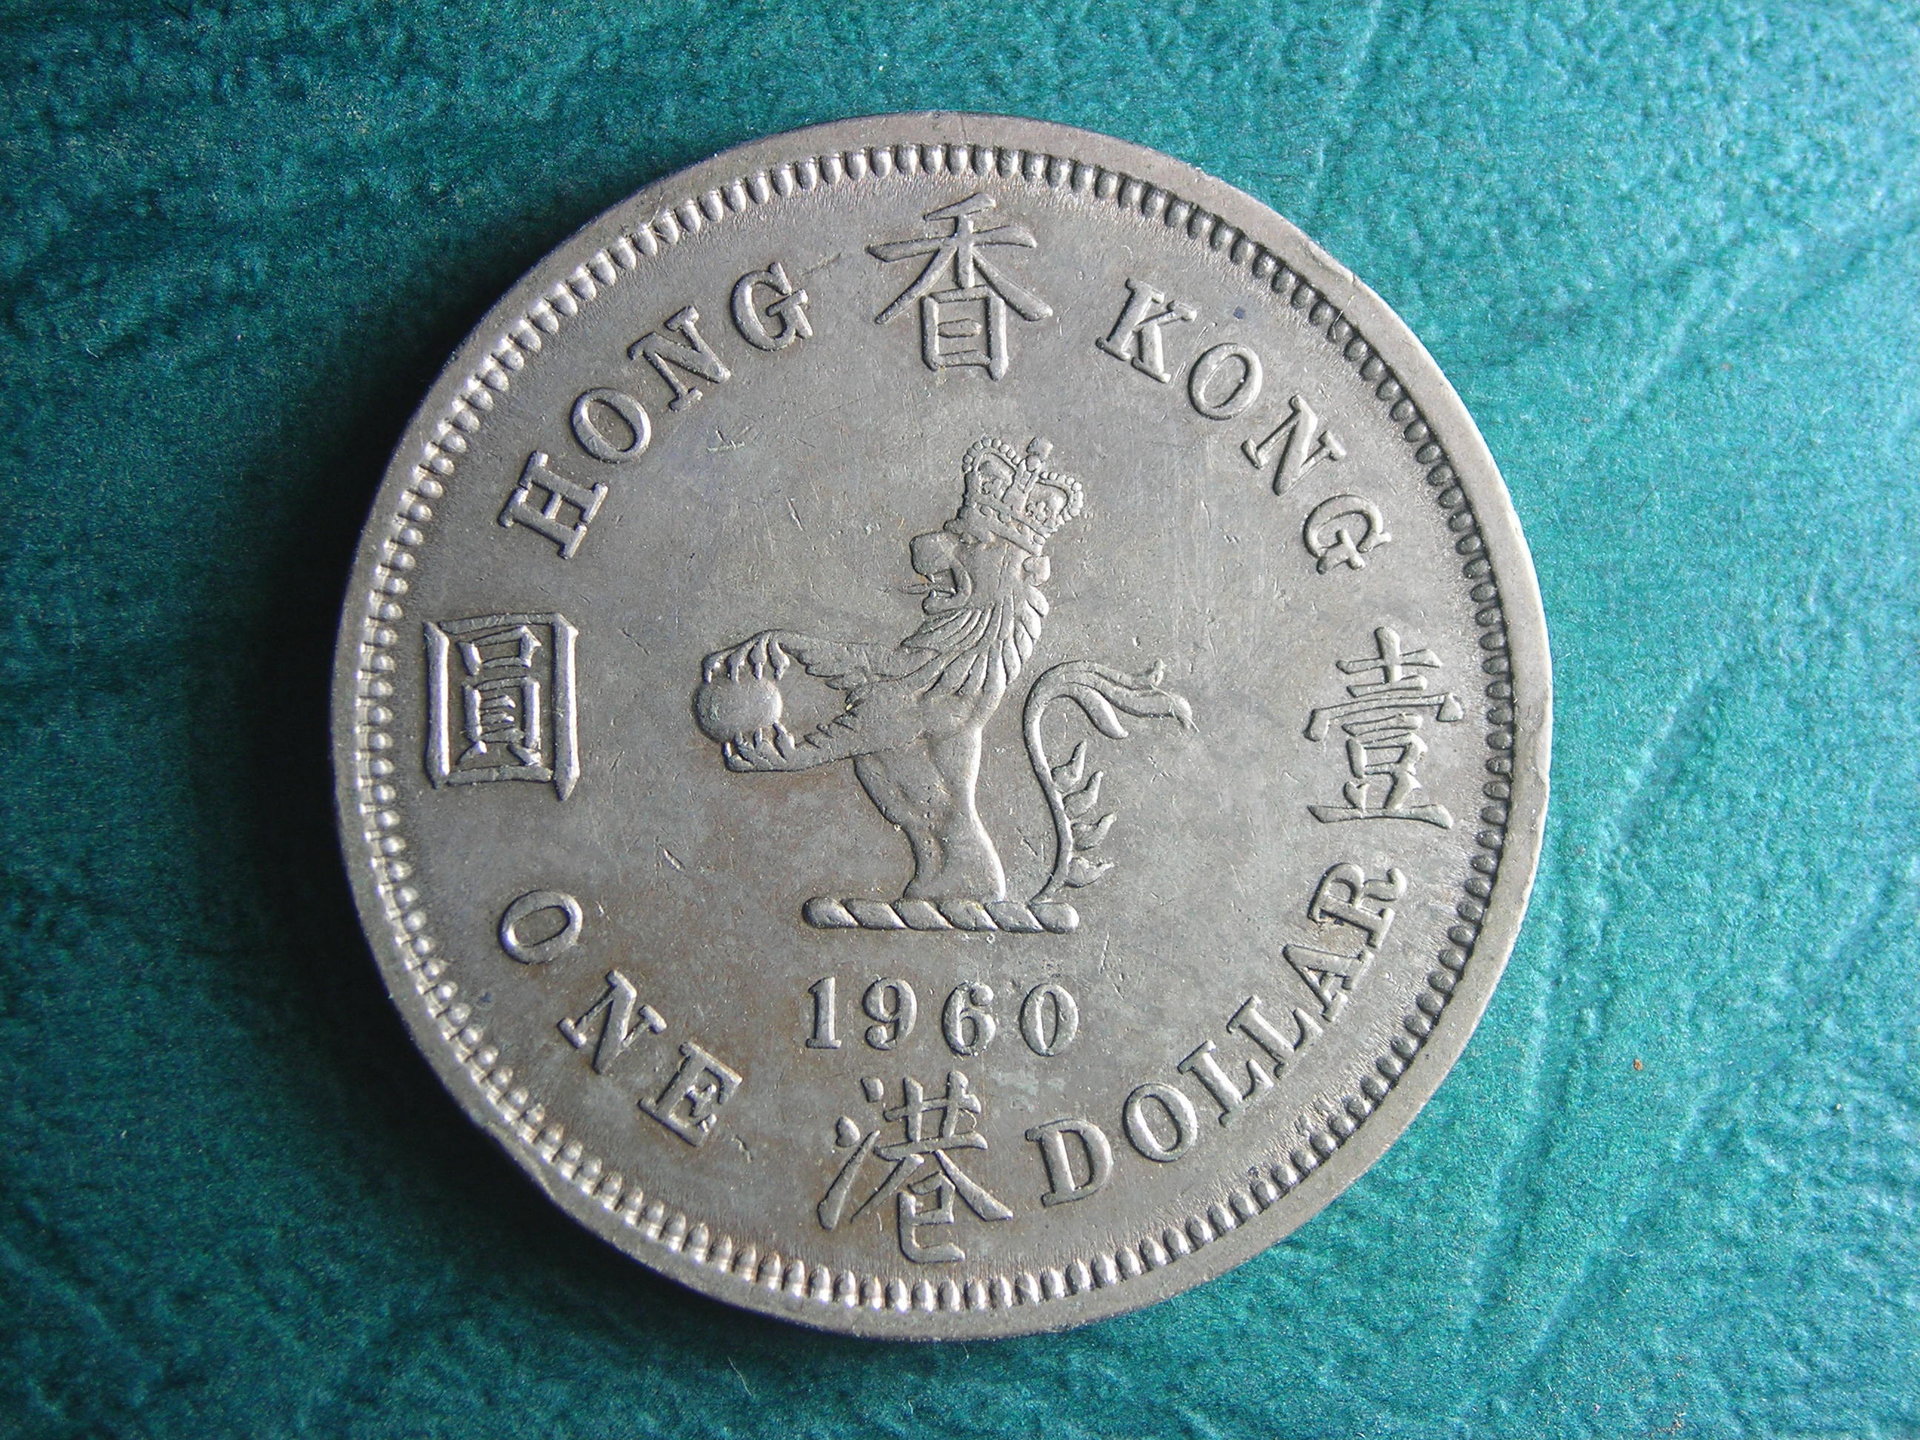 1960 KN HK 1 dol rev.JPG